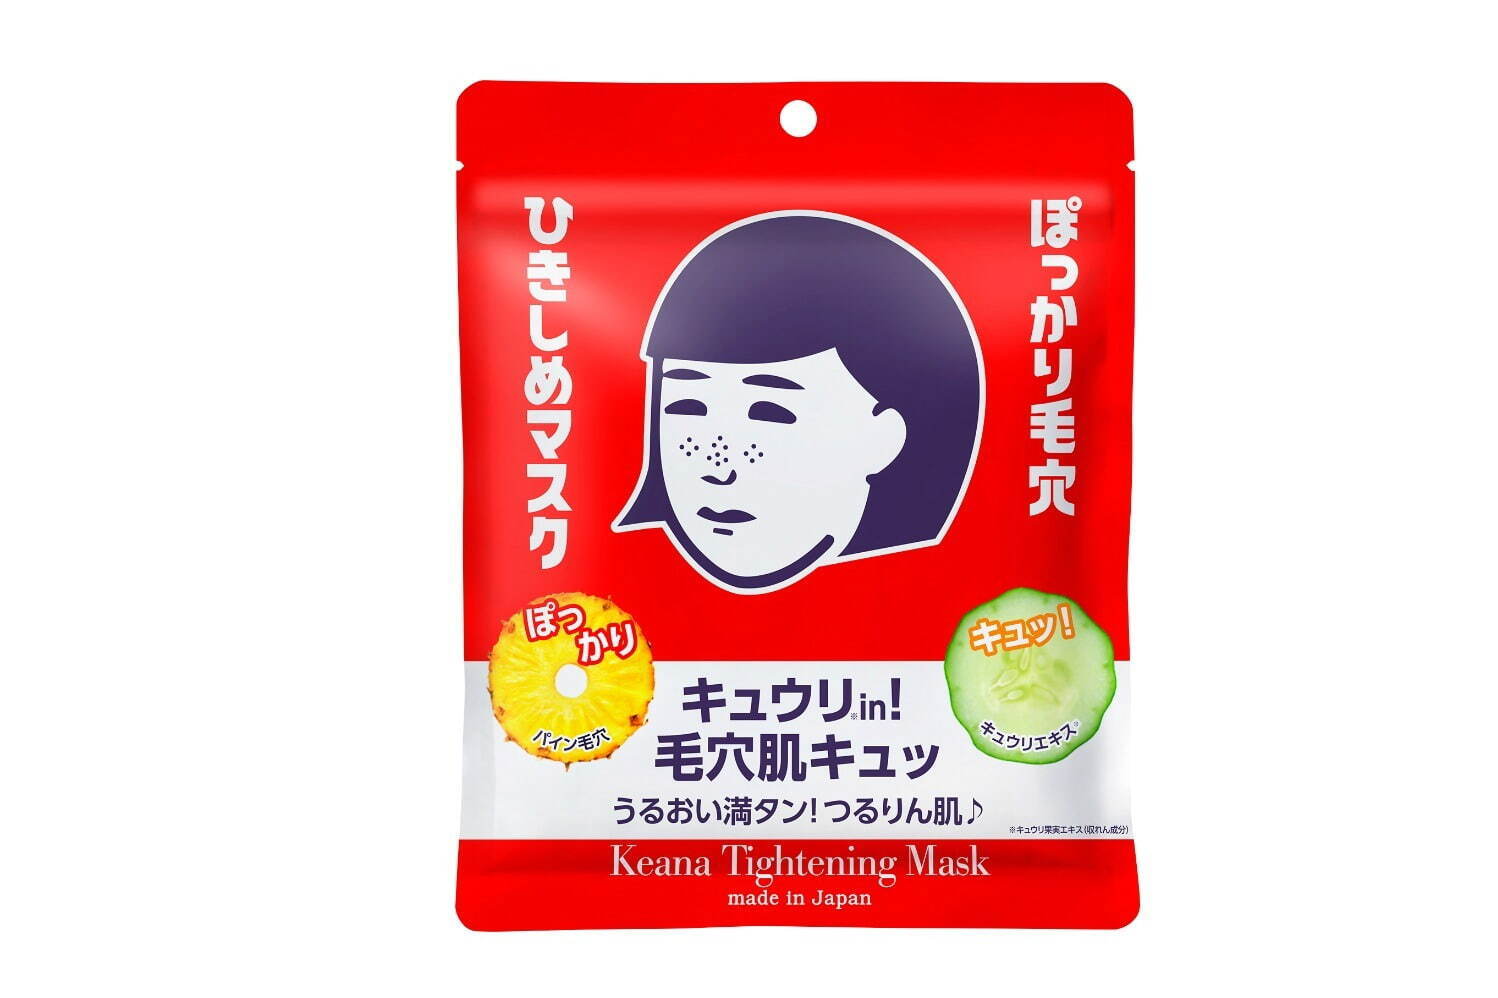 「毛穴撫子 ひきしめマスク」10枚入 715円